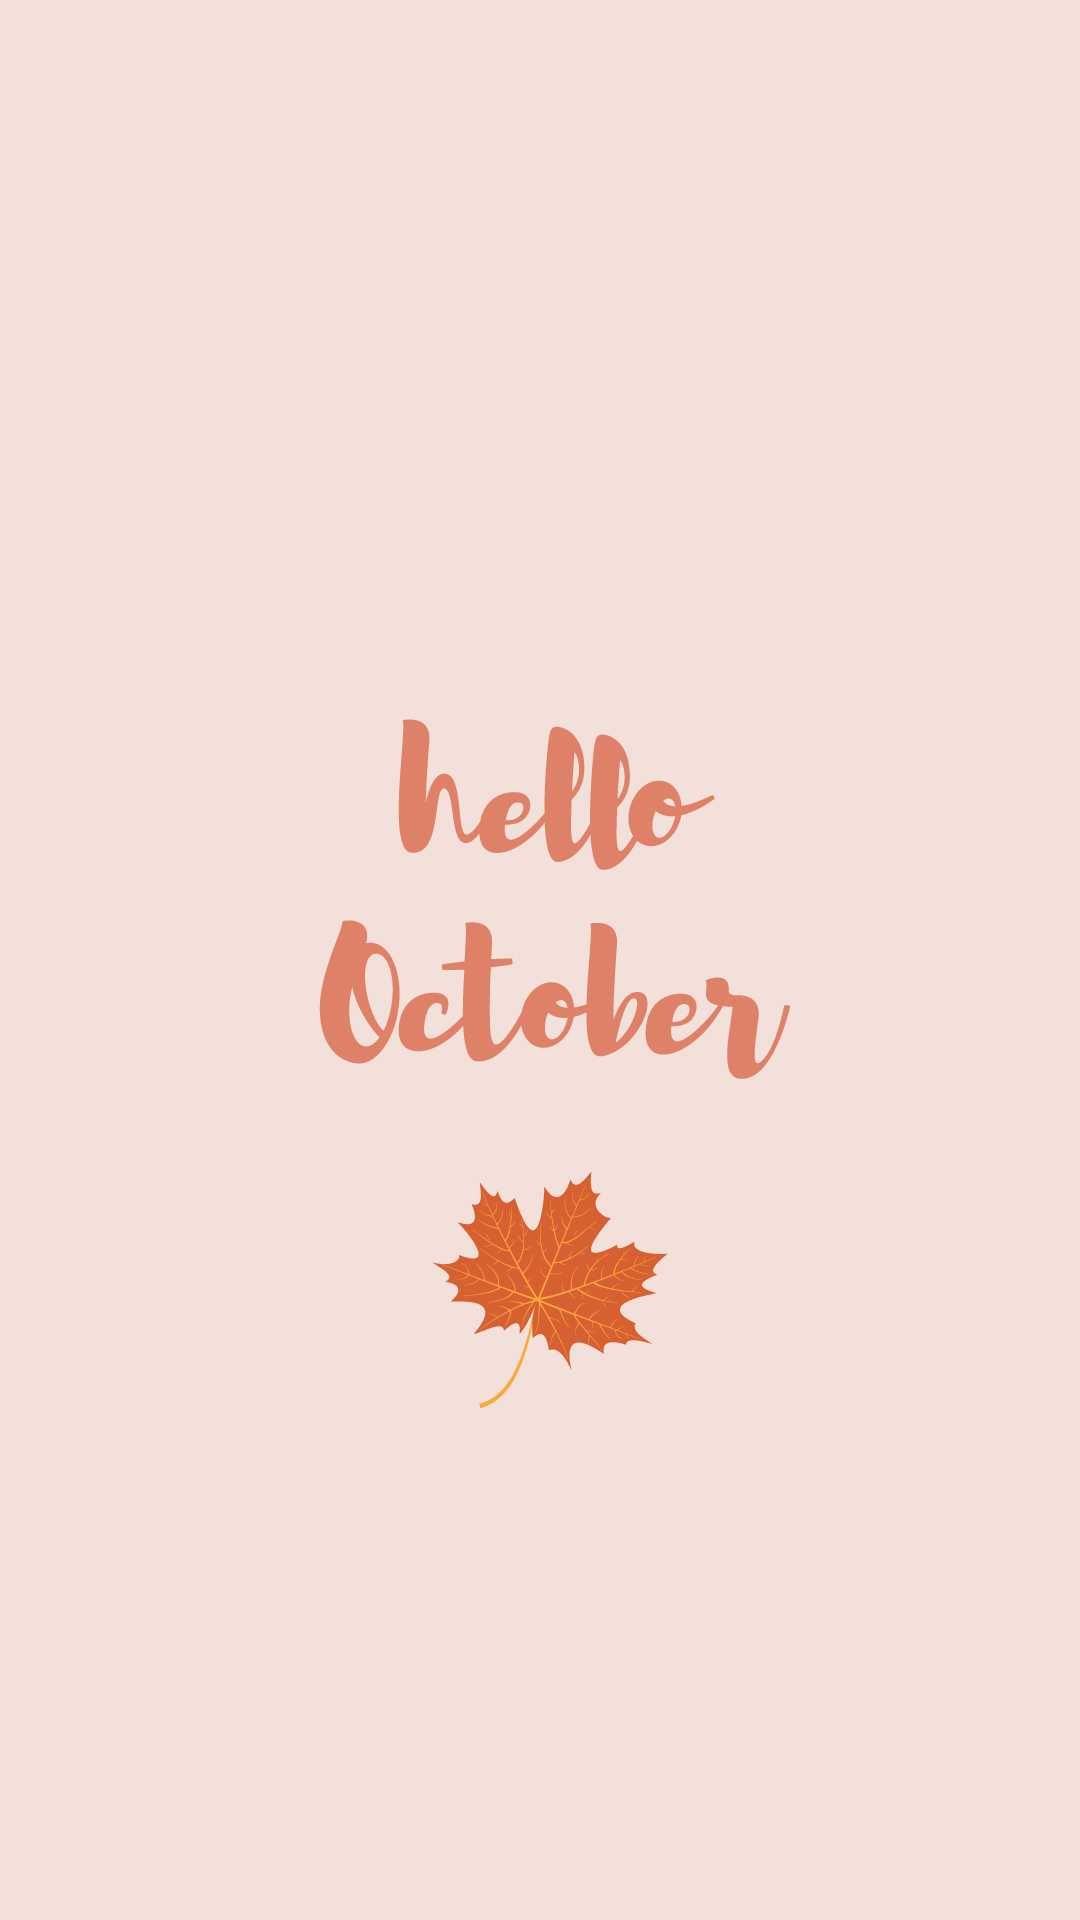 Hello October Wallpaper - iXpap